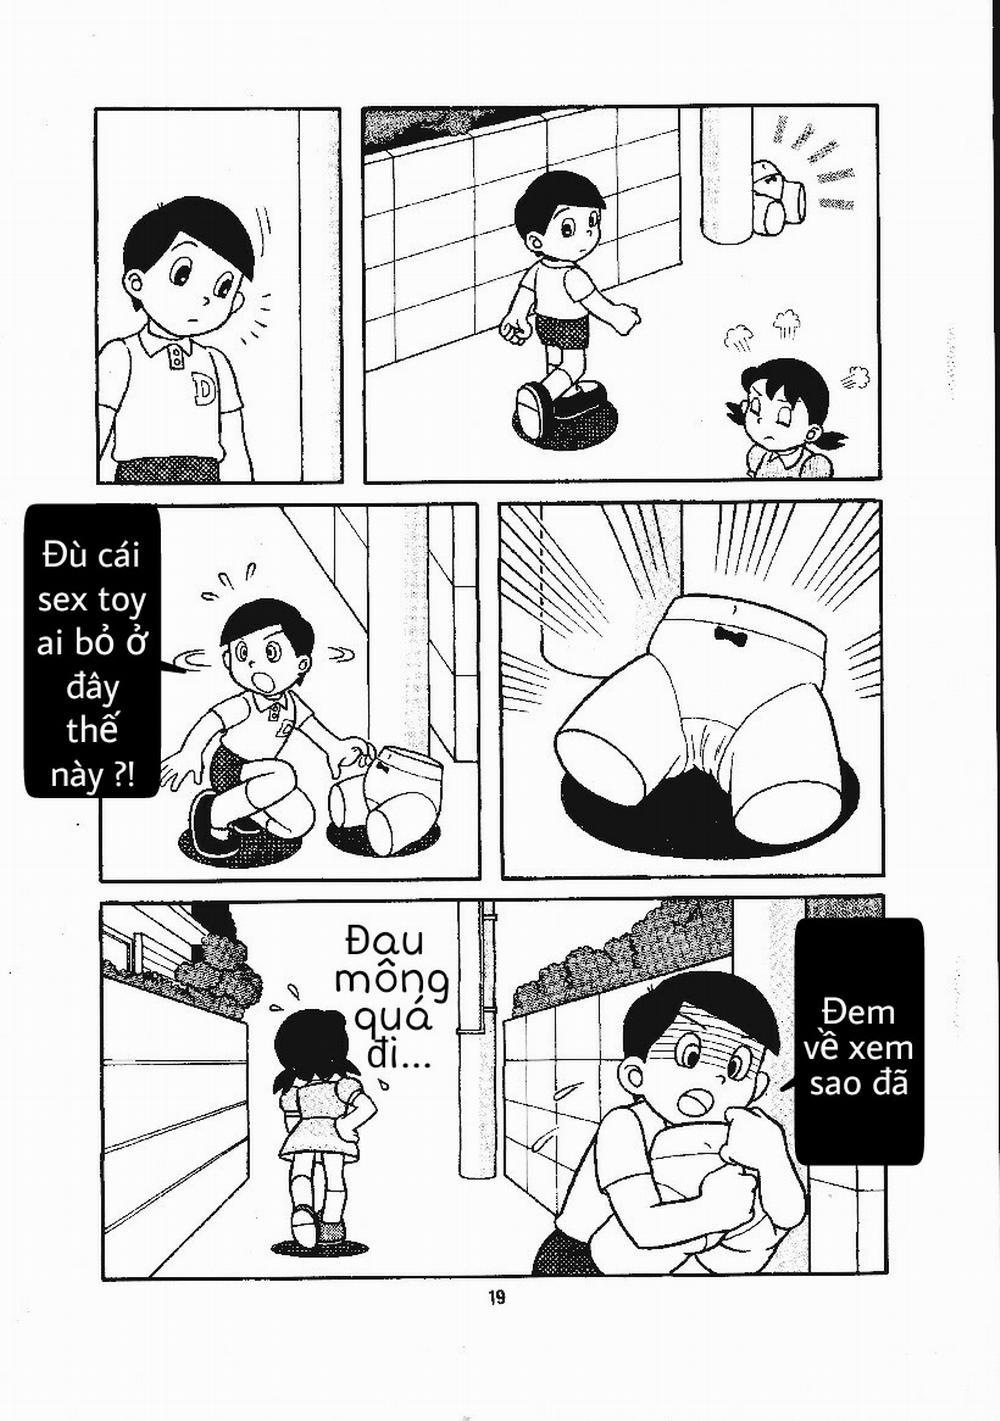 Tuyển Tập Doraemon Doujinshi 18+ Chương 15 B n d i c a Xuka Trang 3